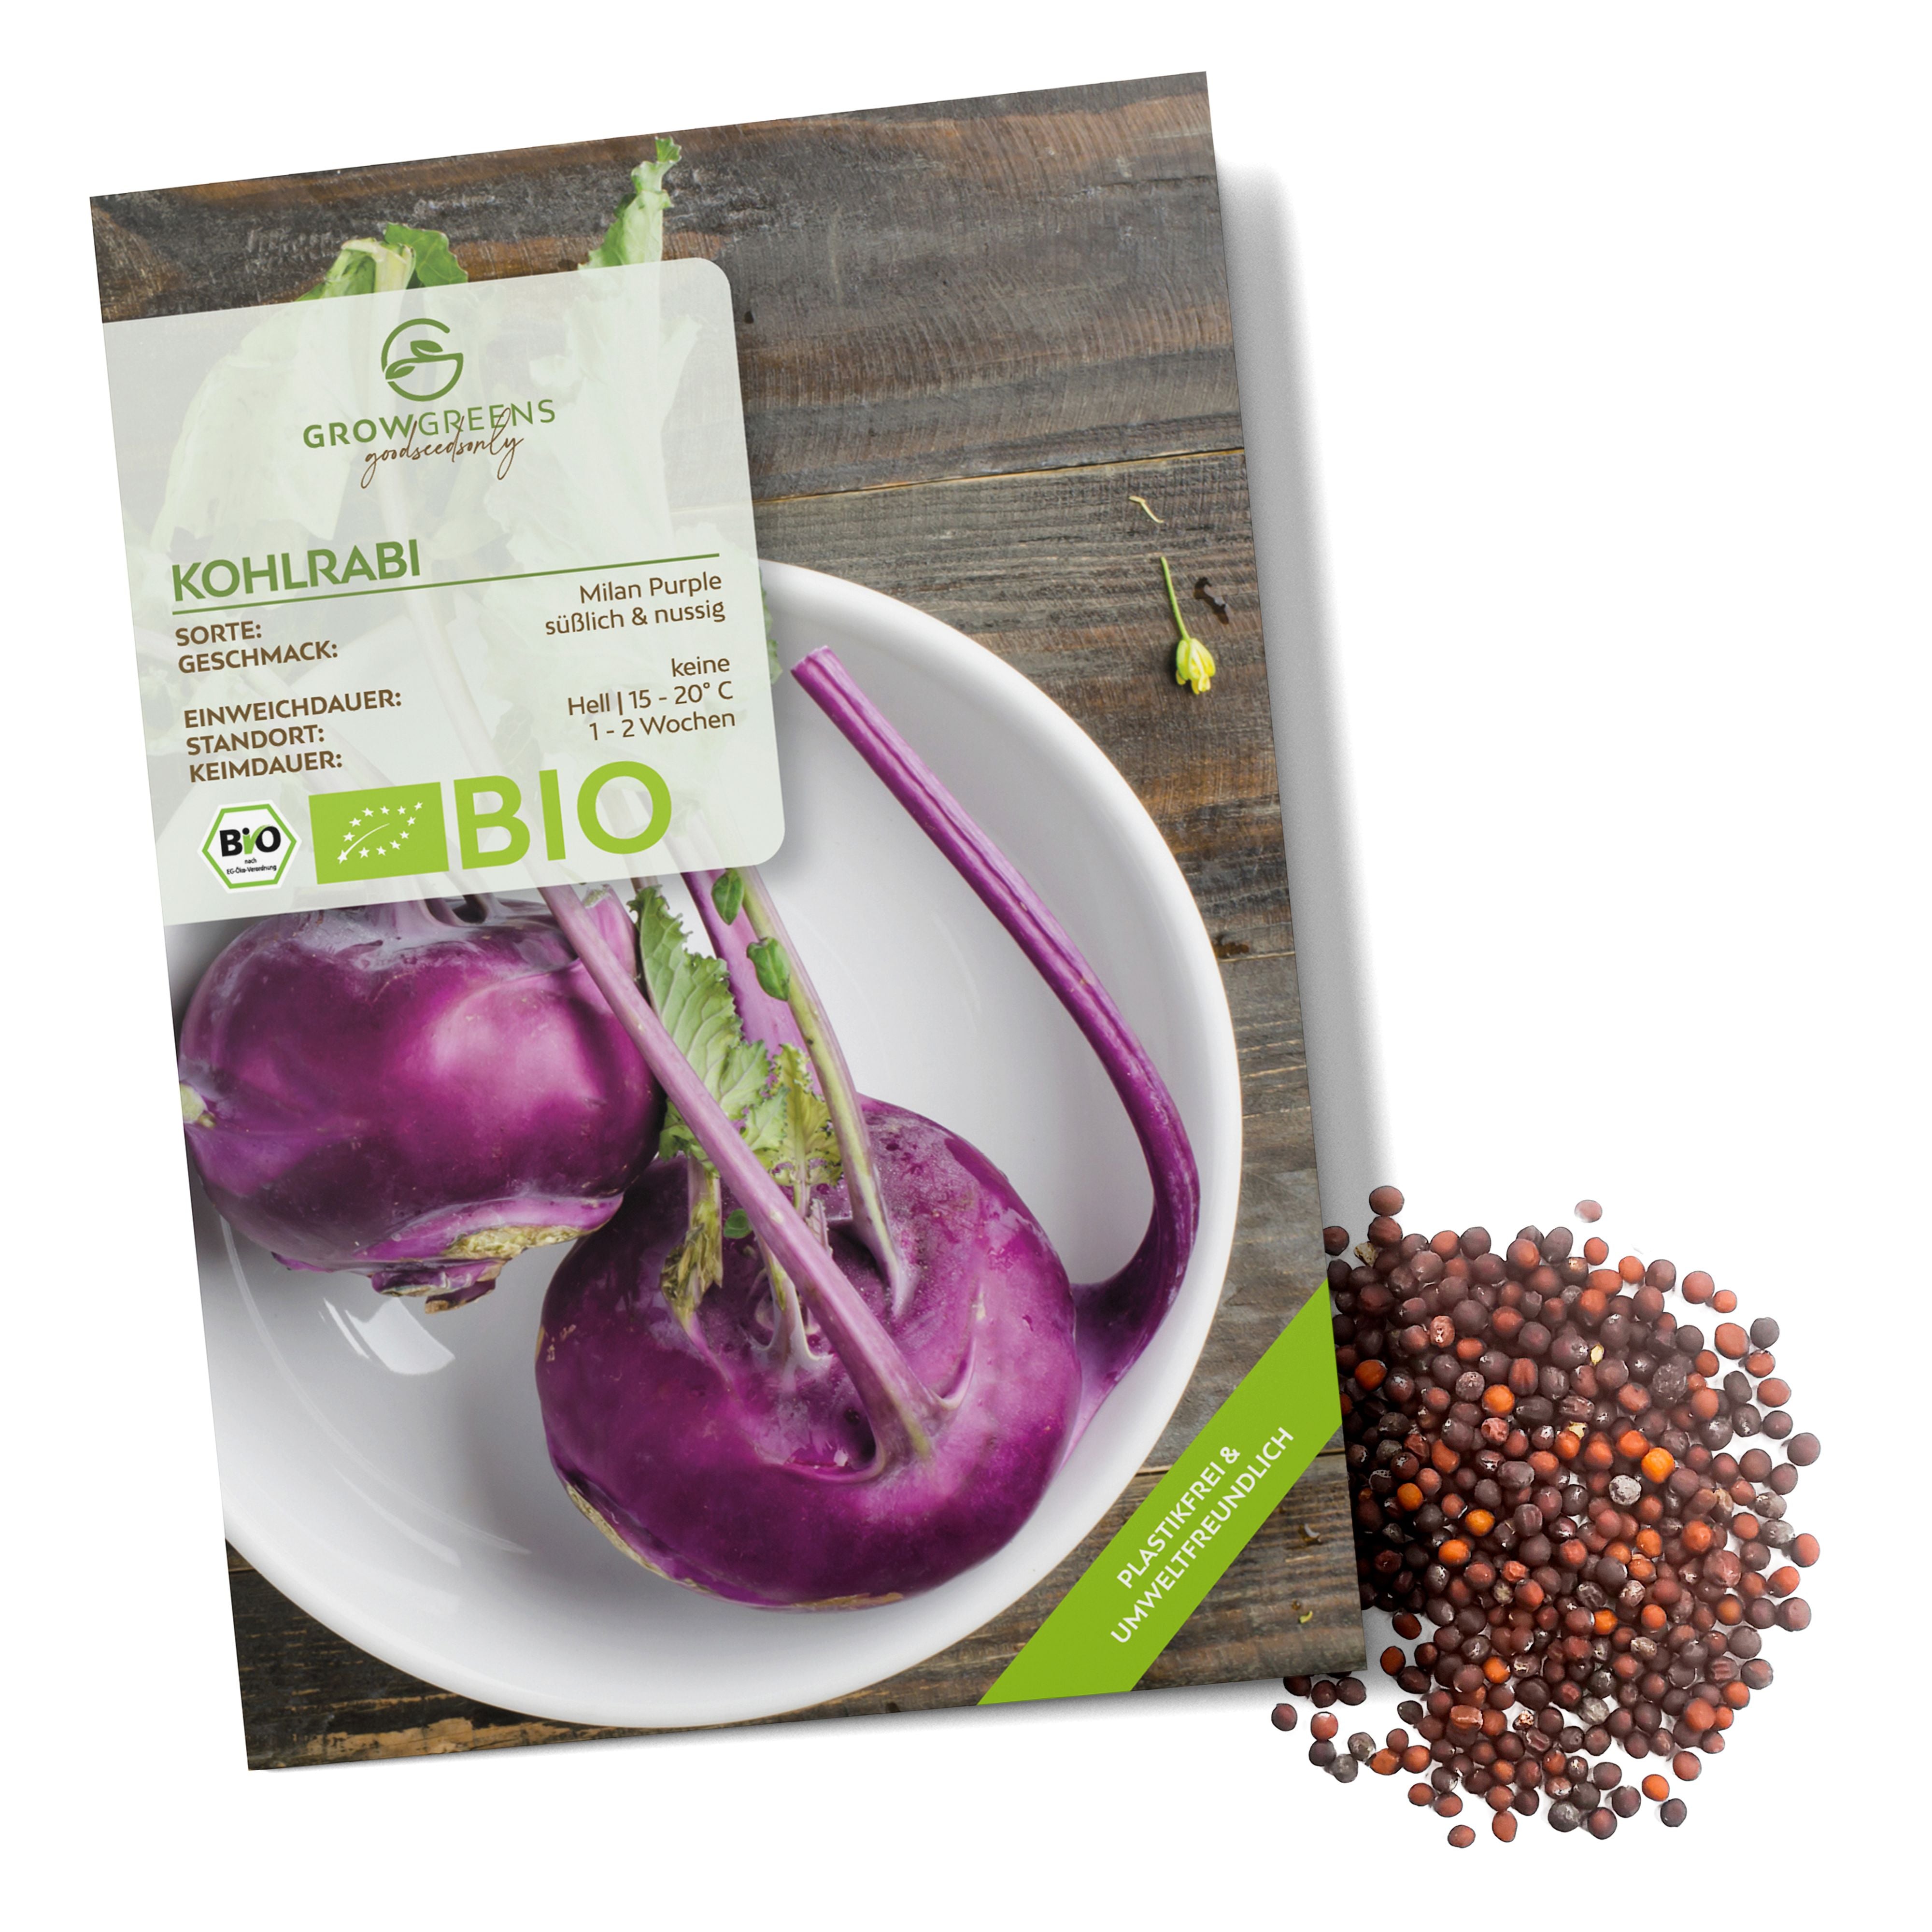 BIO Lila Kohlrabi Samen (Milan Purple) - Kohlrabi Saatgut aus biologischem Anbau (300 Korn)